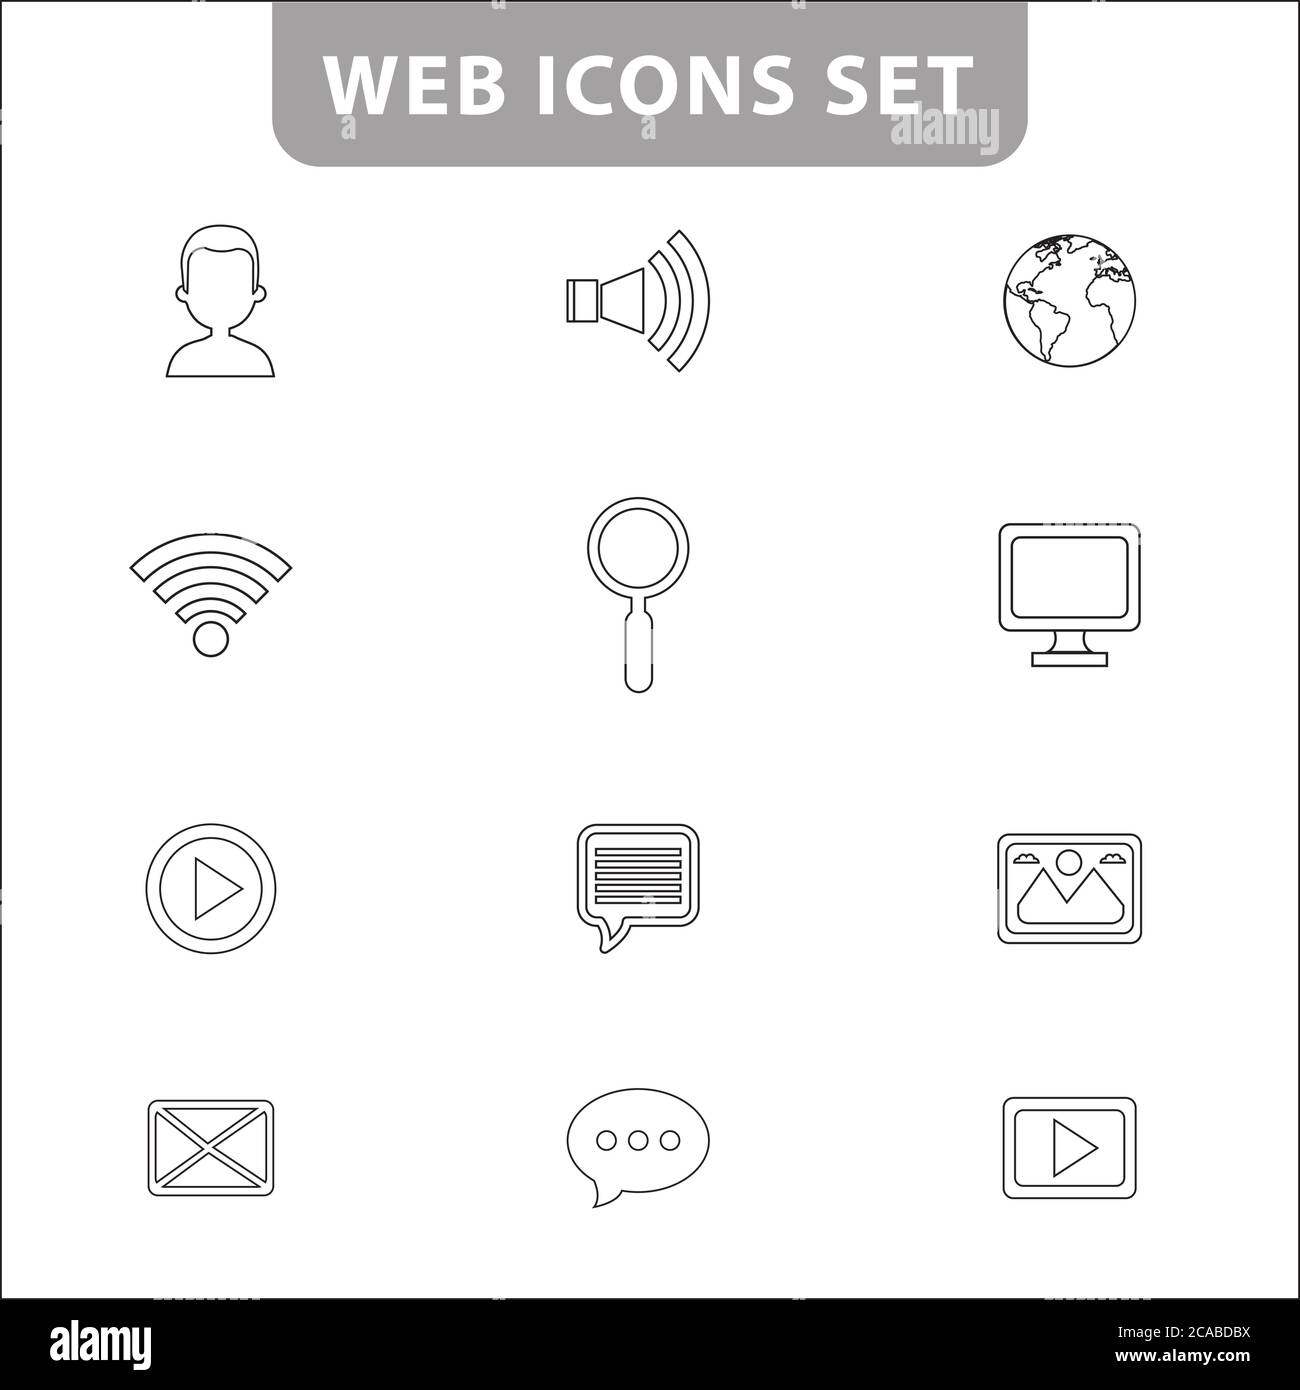 Handy Zeichen Symbole - Vektor Icon Set Stock-Vektorgrafik - Alamy